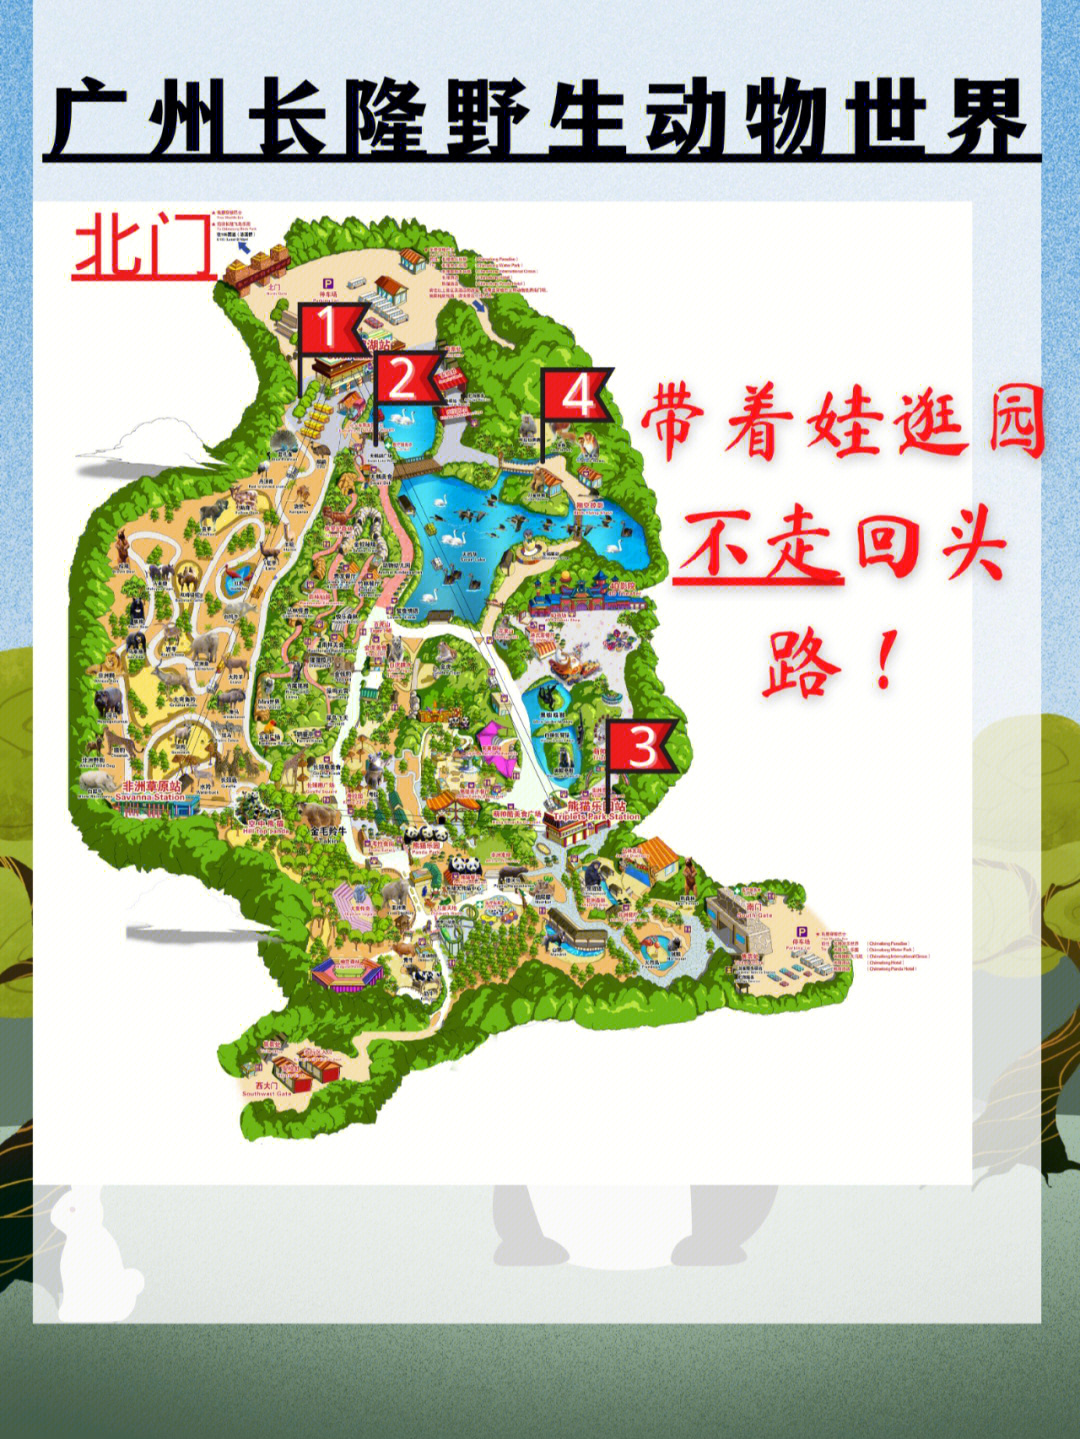 广州长隆野生动物园亲子游玩指南